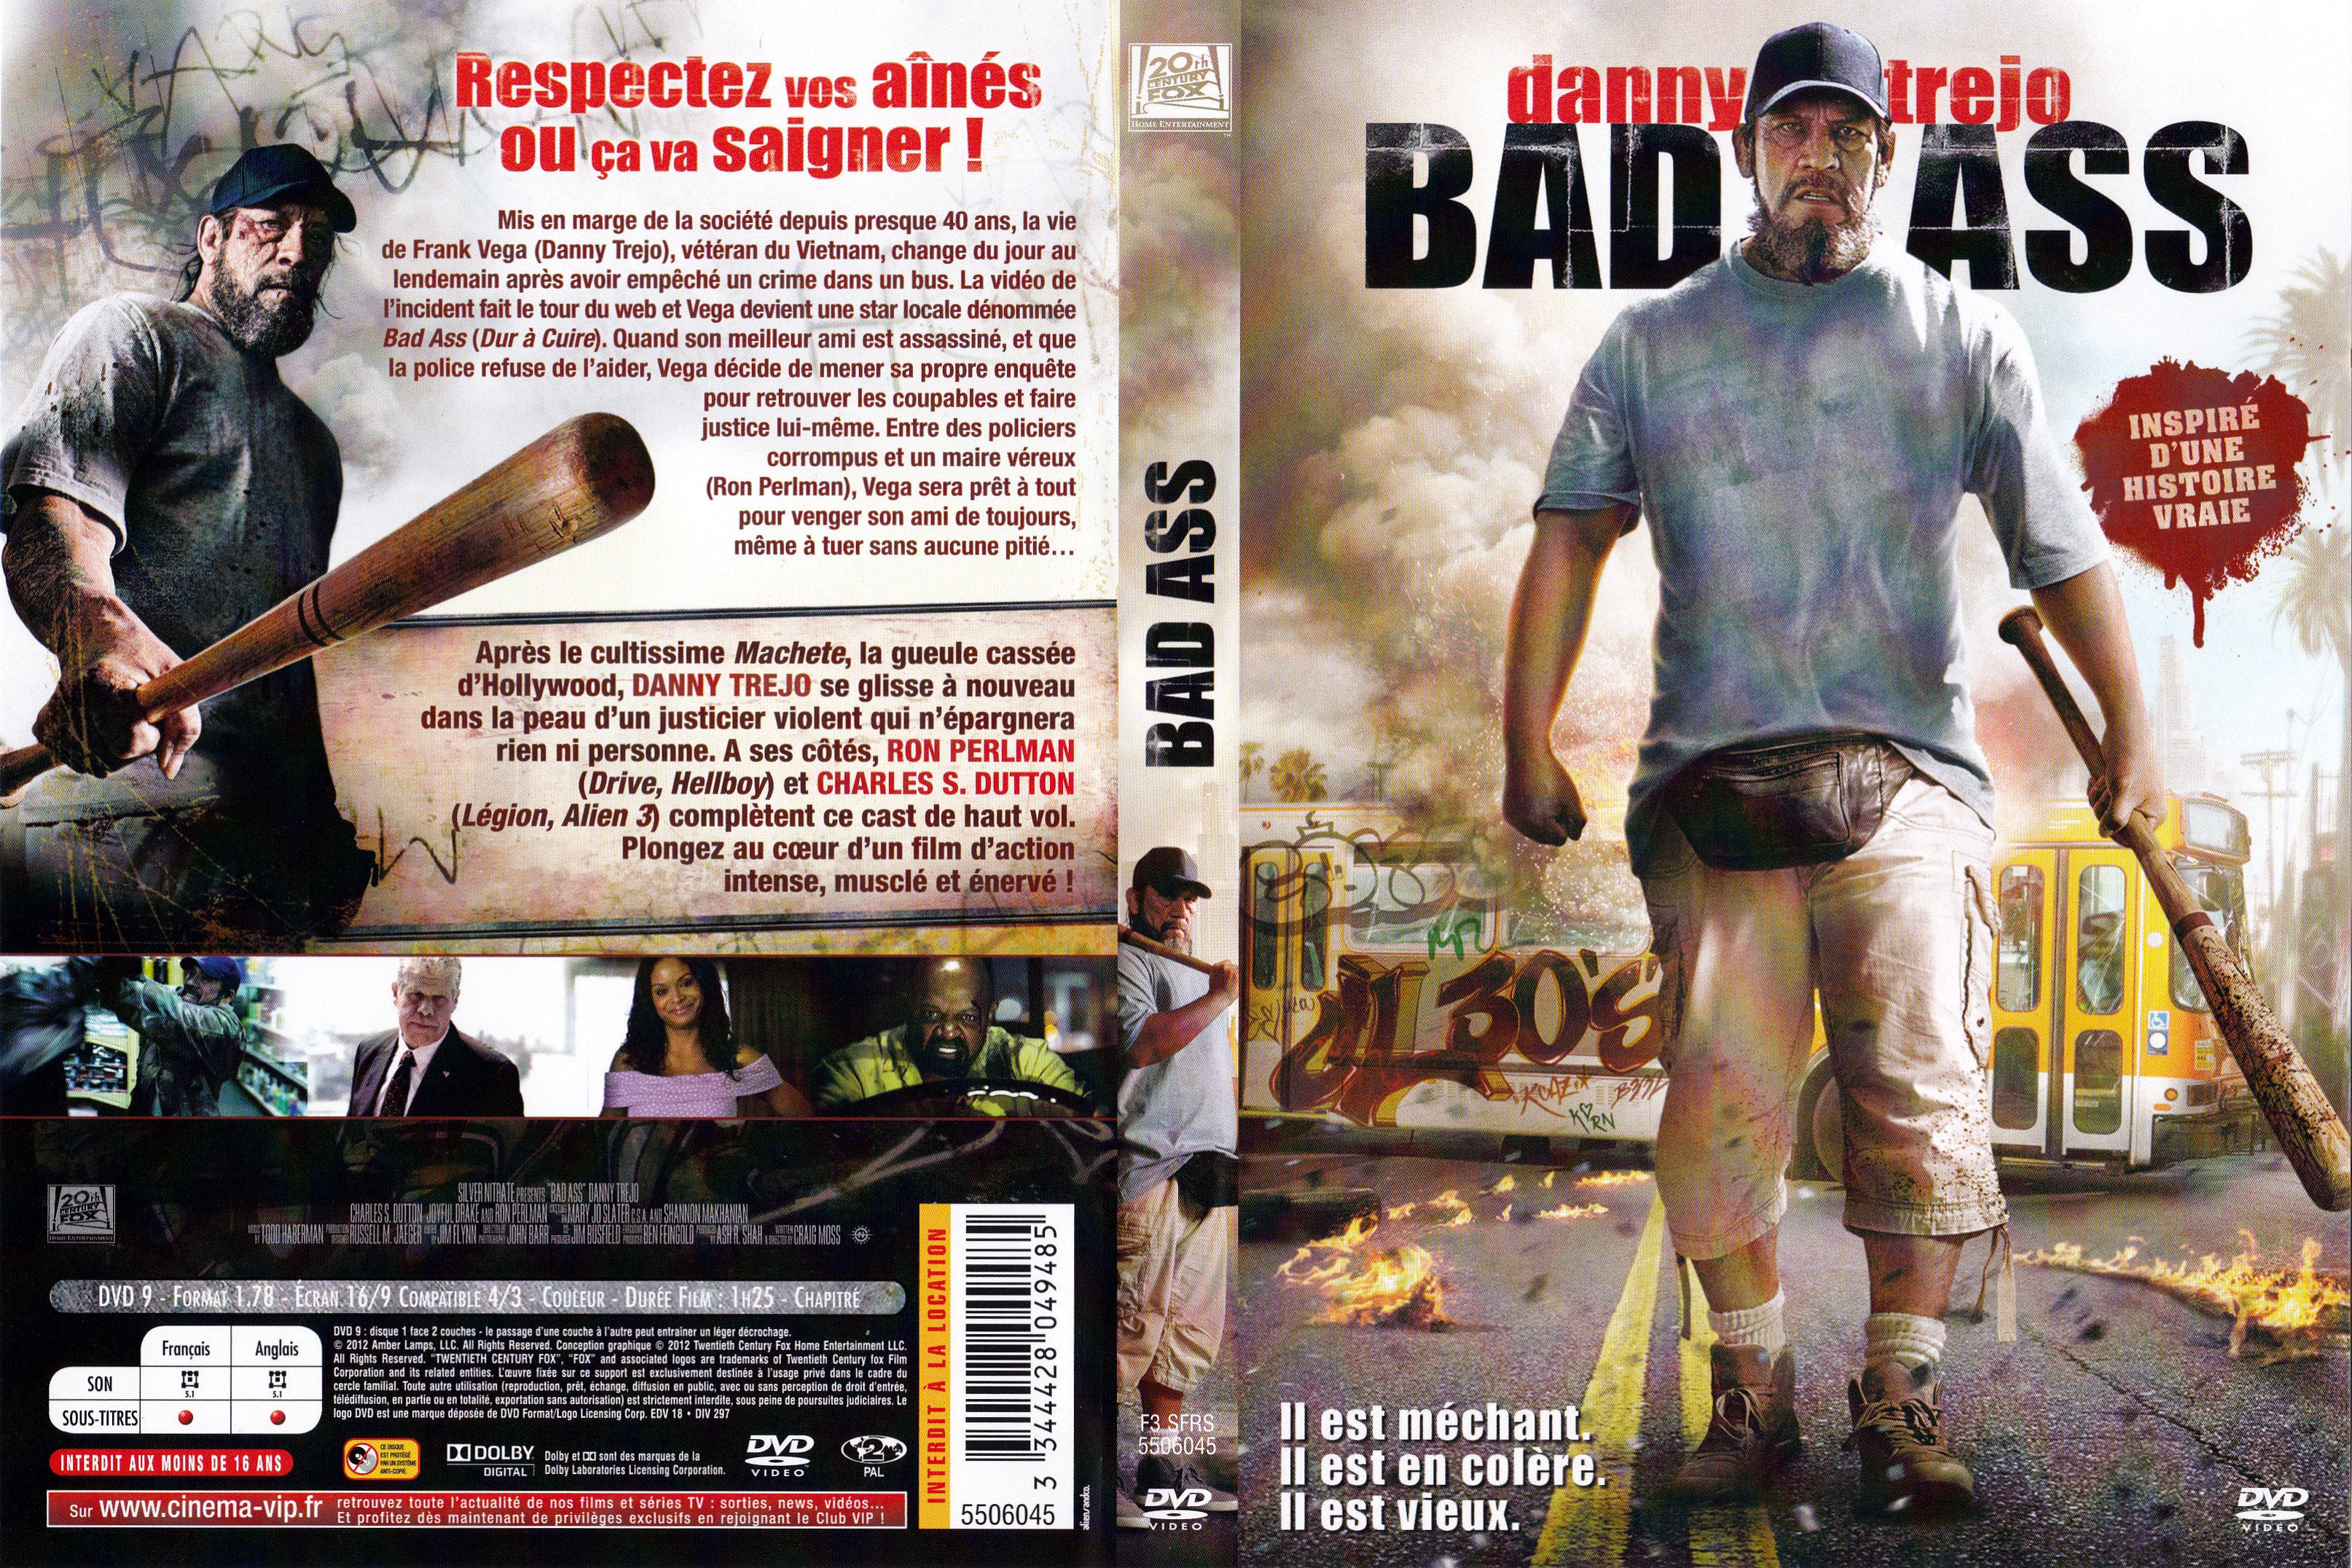 Jaquette DVD Bad ass